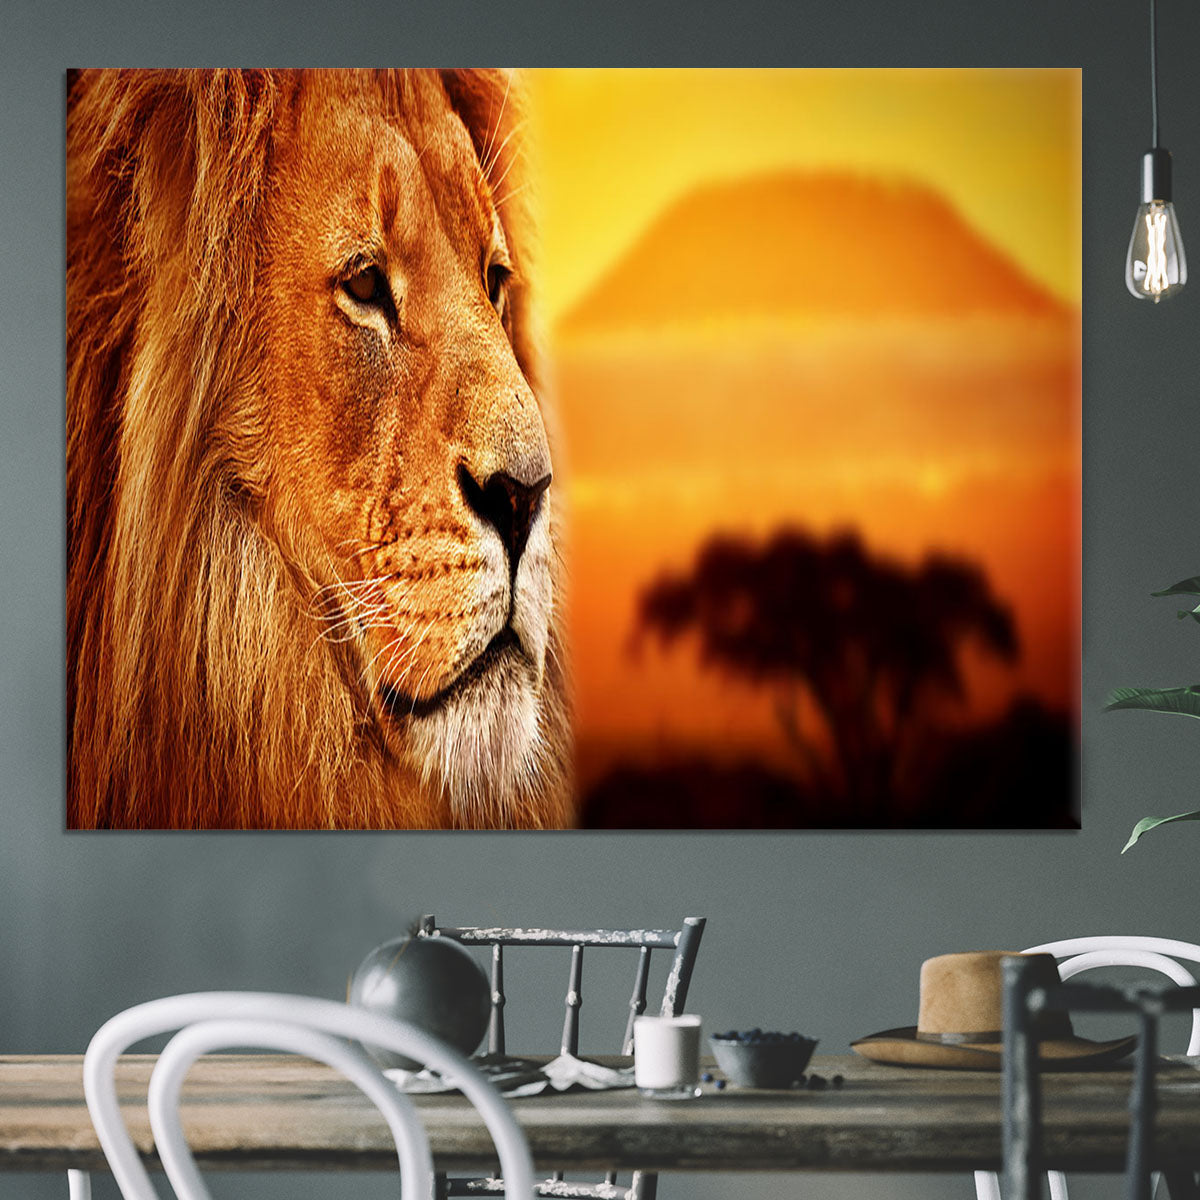 Lion portrait on savanna landscape Canvas Print or Poster - Canvas Art Rocks - 3